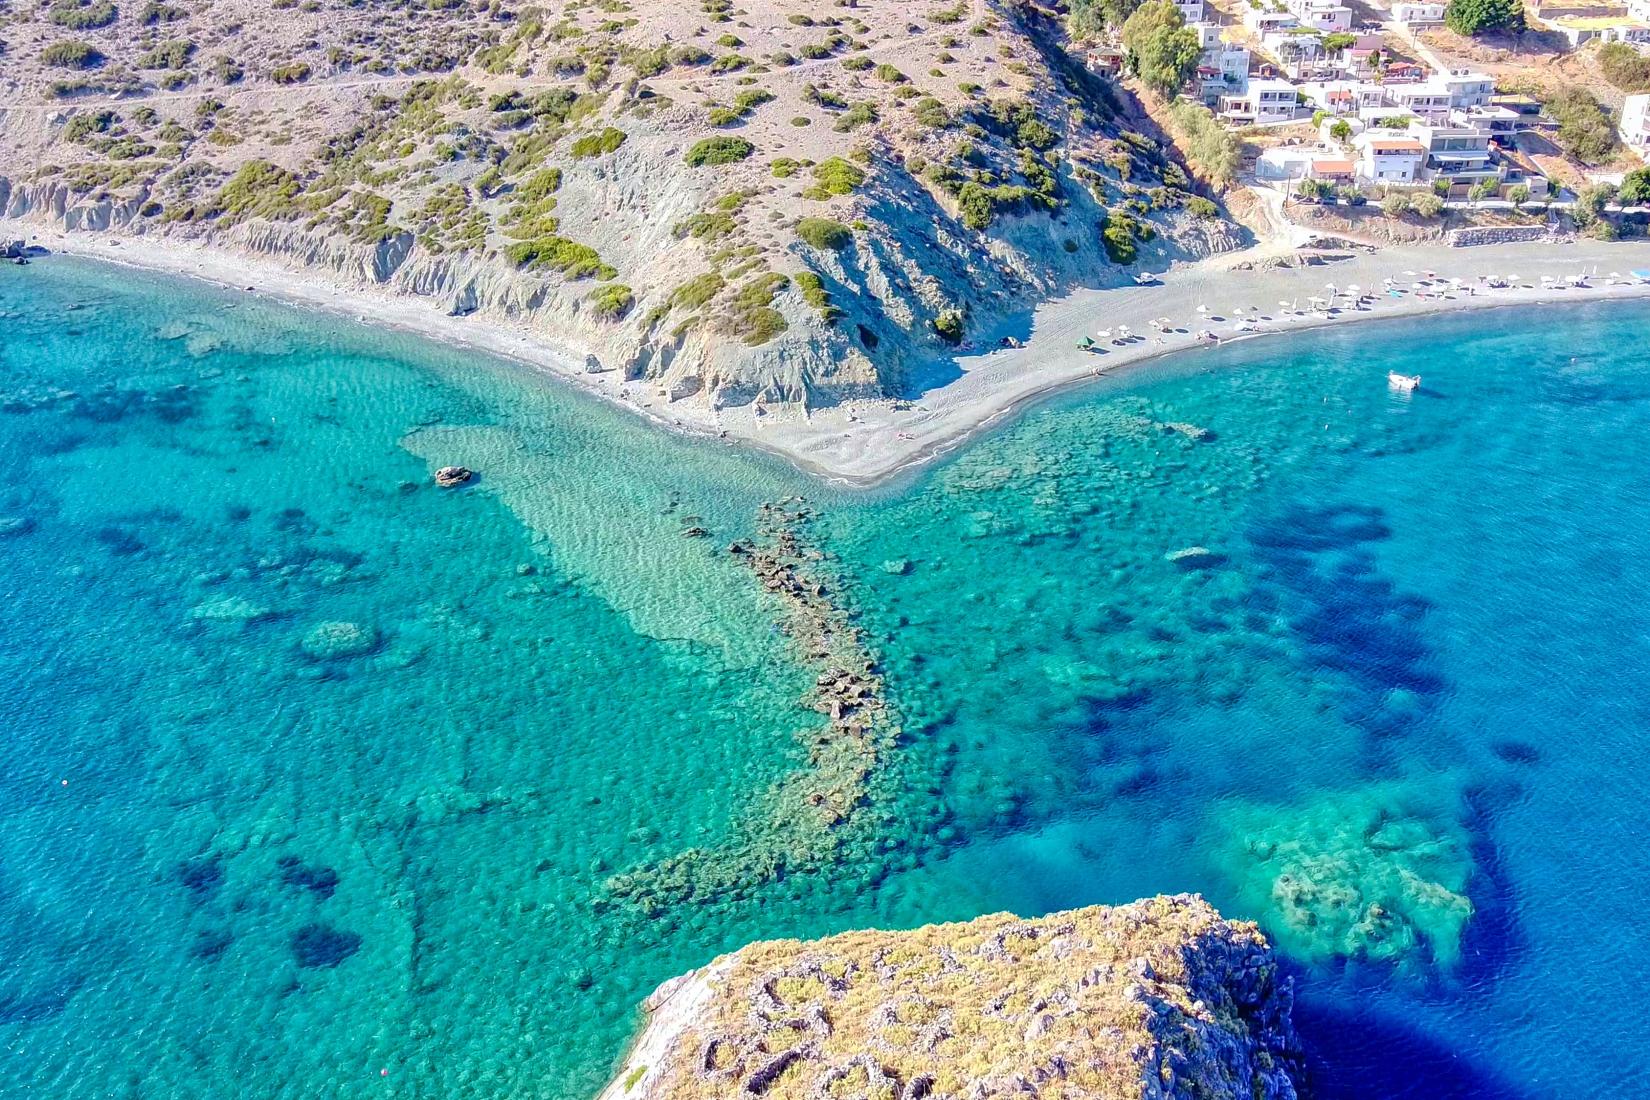 Crete Photo - Sandee